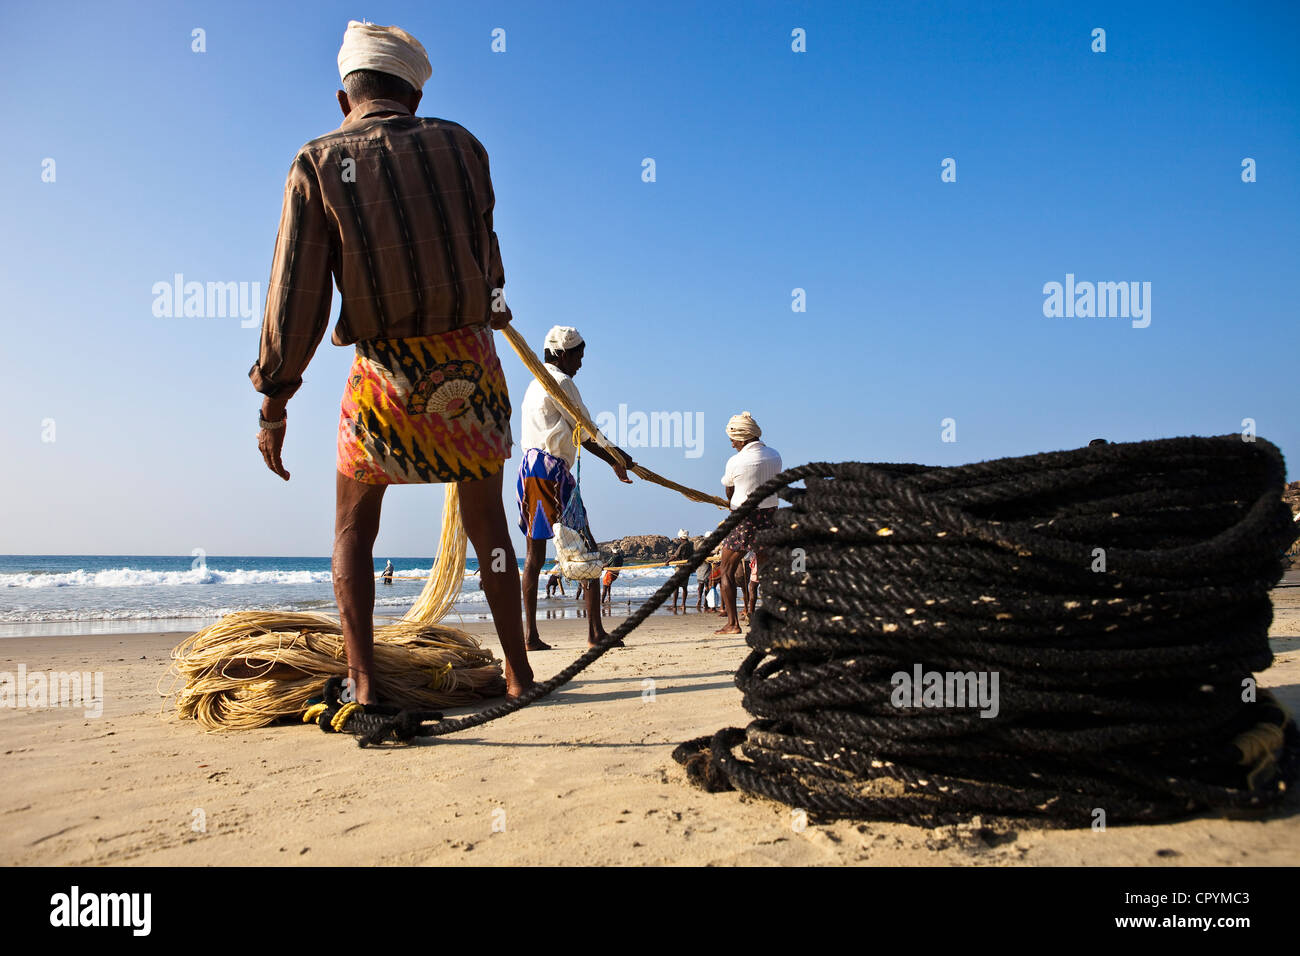 Indien, Bundesstaat Kerala, Kovalam, am frühen Morgen, die Fischer bringen zurück am Strand ein großes Netz aus dem Boot geworfen Stockfoto